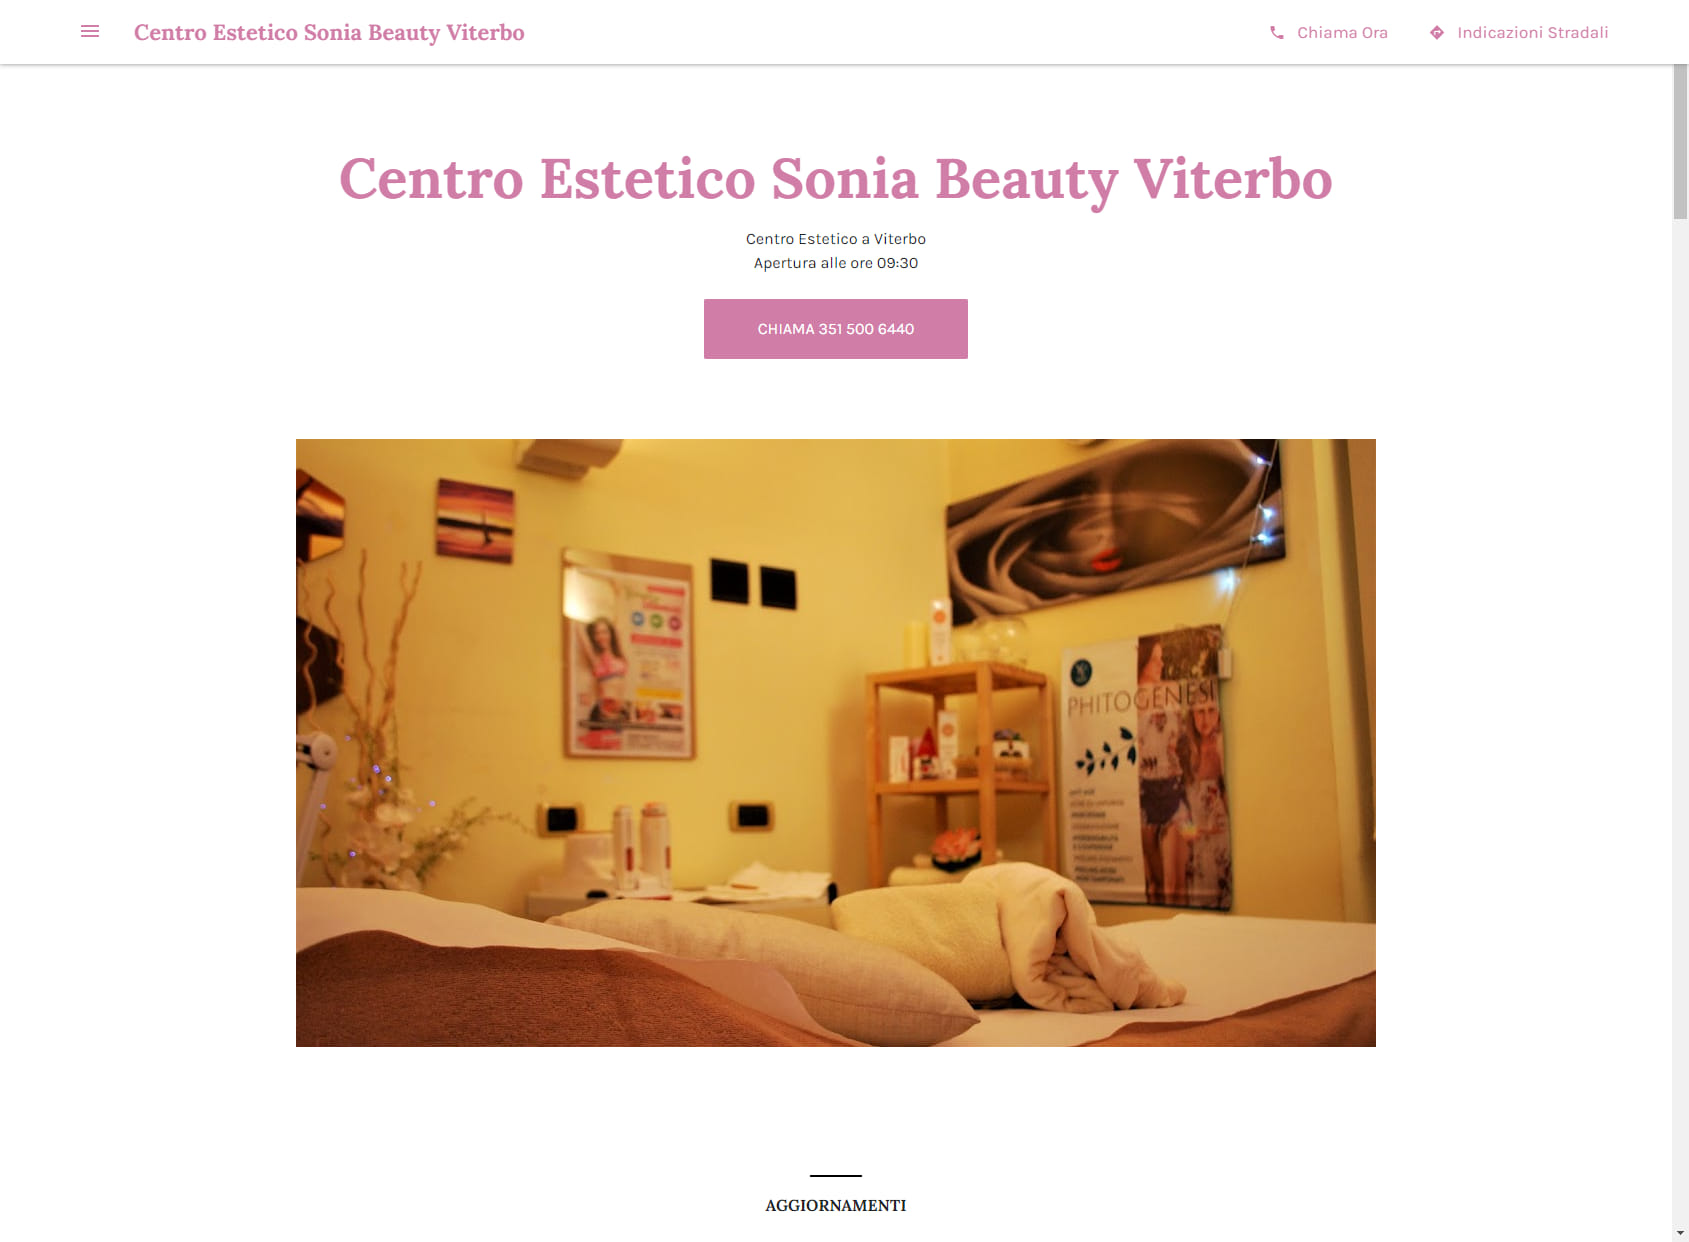 Centro Estetico Sonia Beauty Viterbo